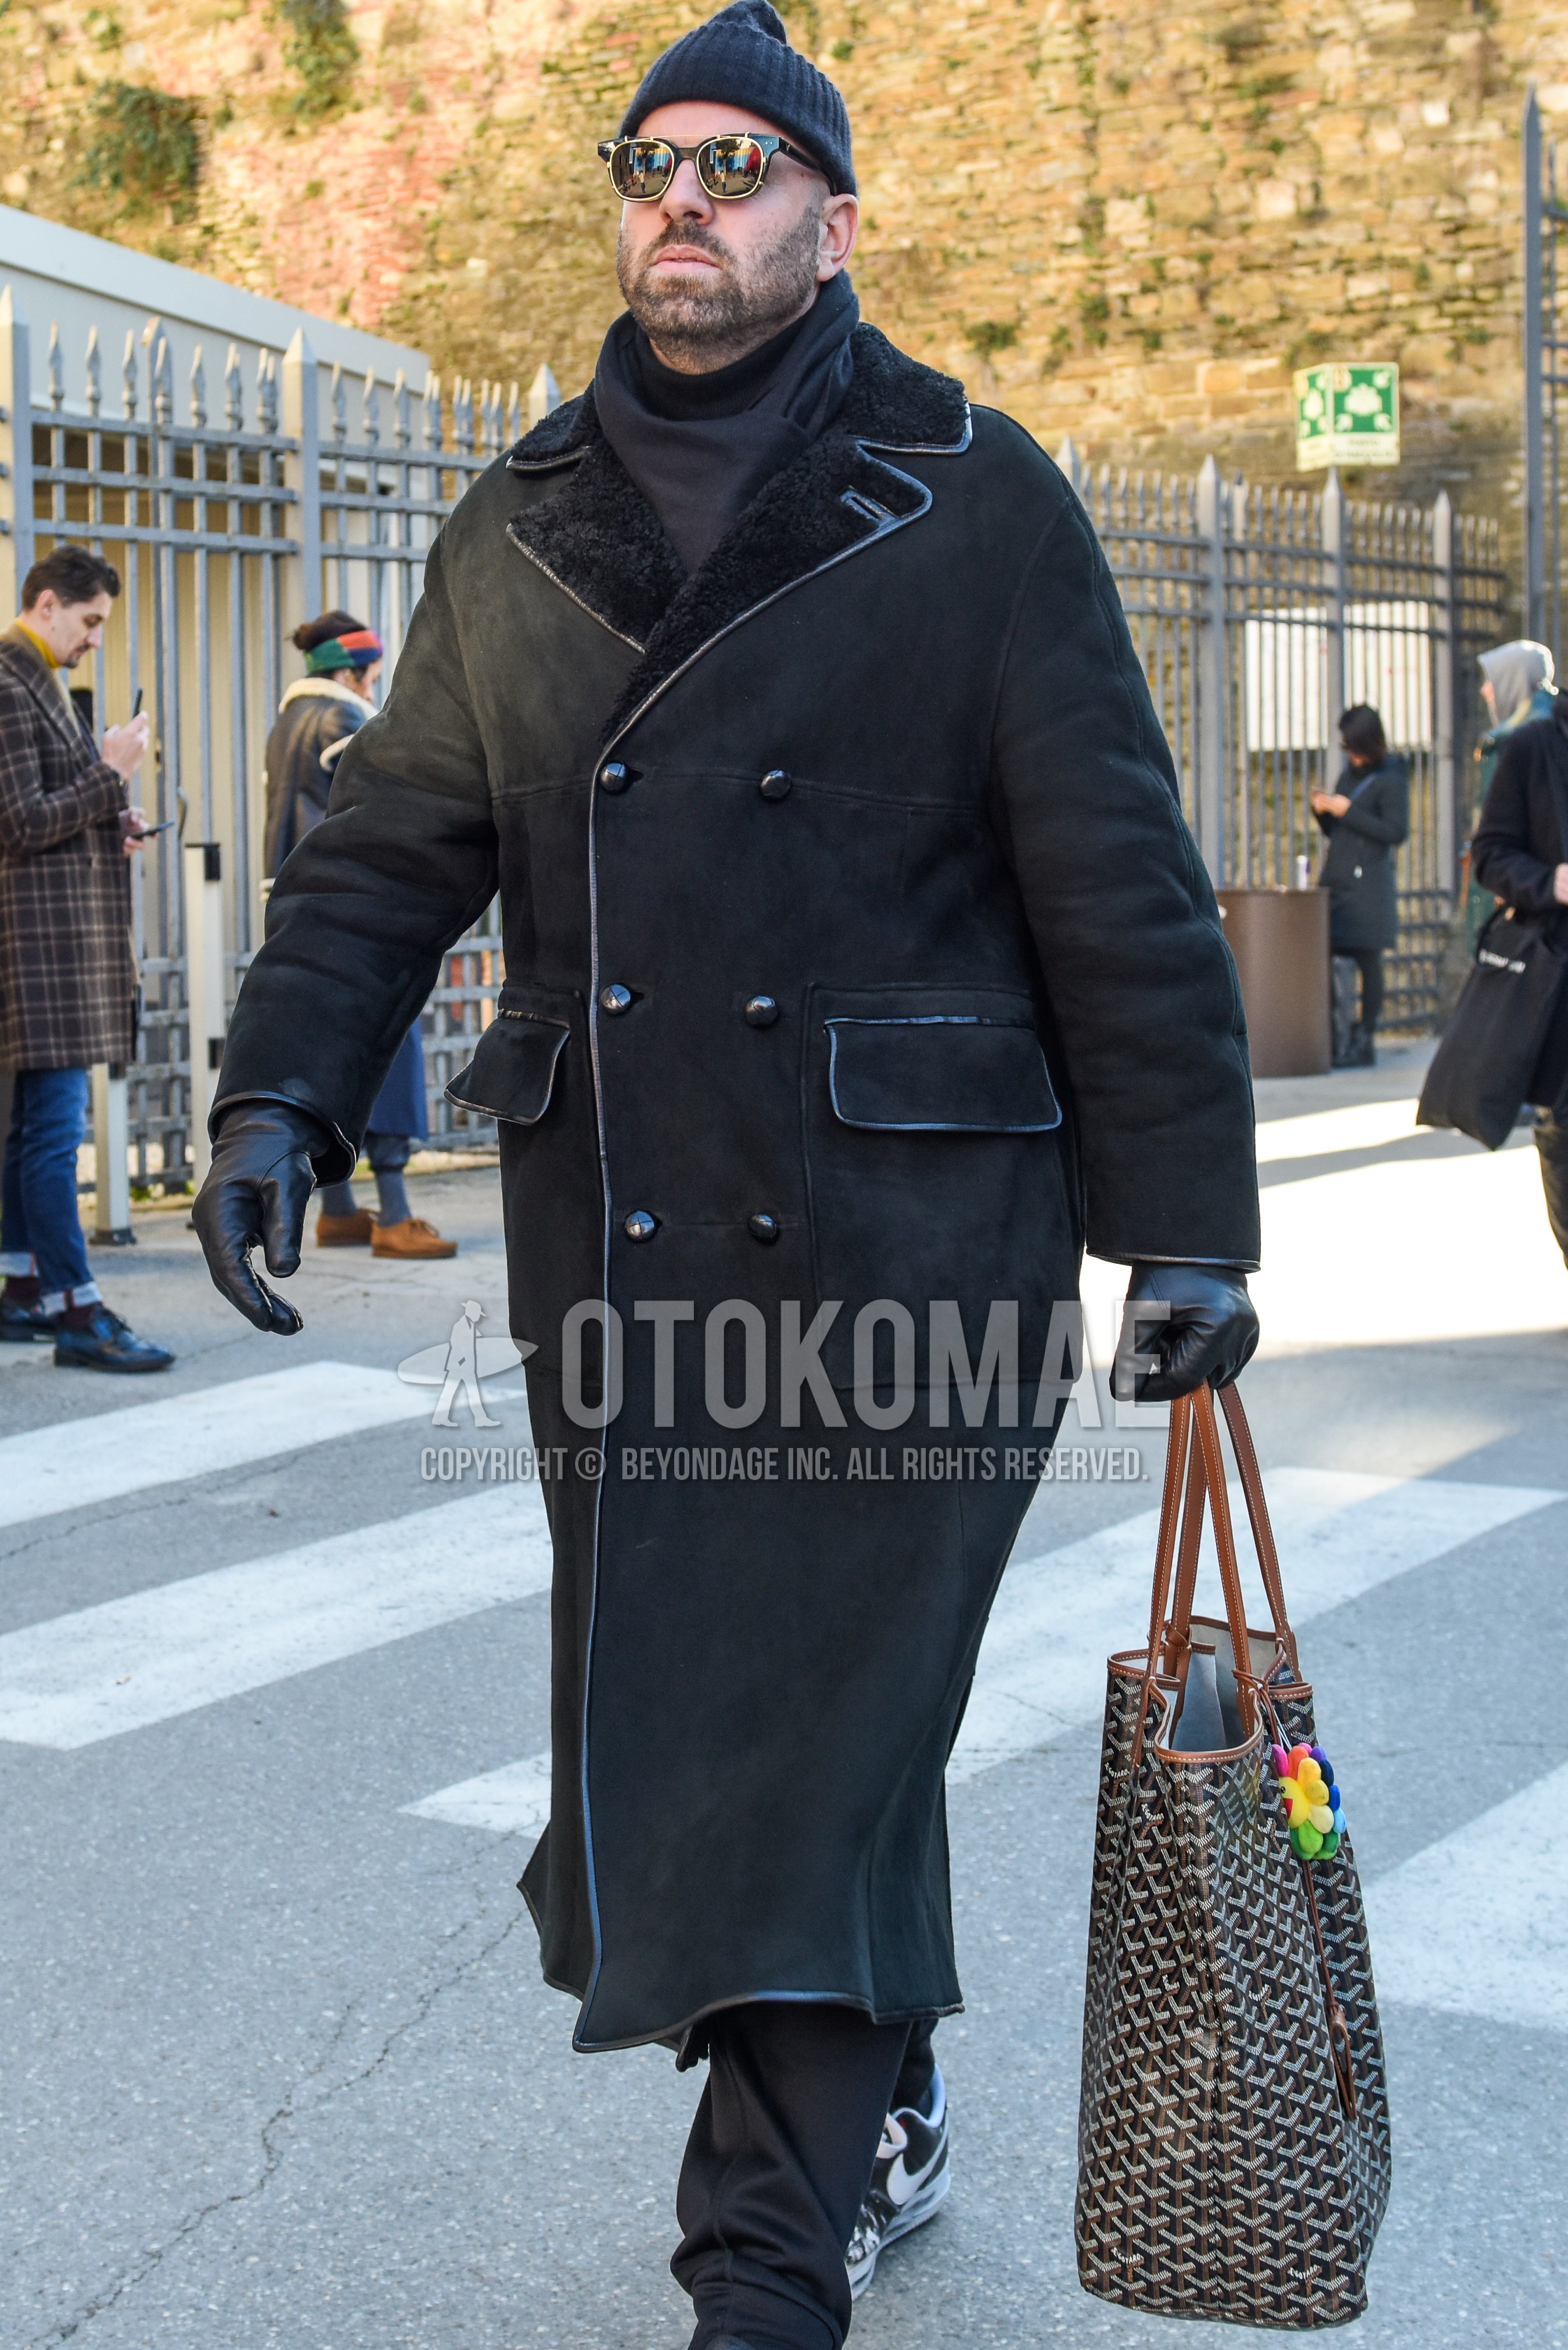 Men's autumn winter outfit with black plain knit cap, black plain sunglasses, gray plain scarf, black plain ulster coat, gray plain slacks, black bag briefcase/handbag.